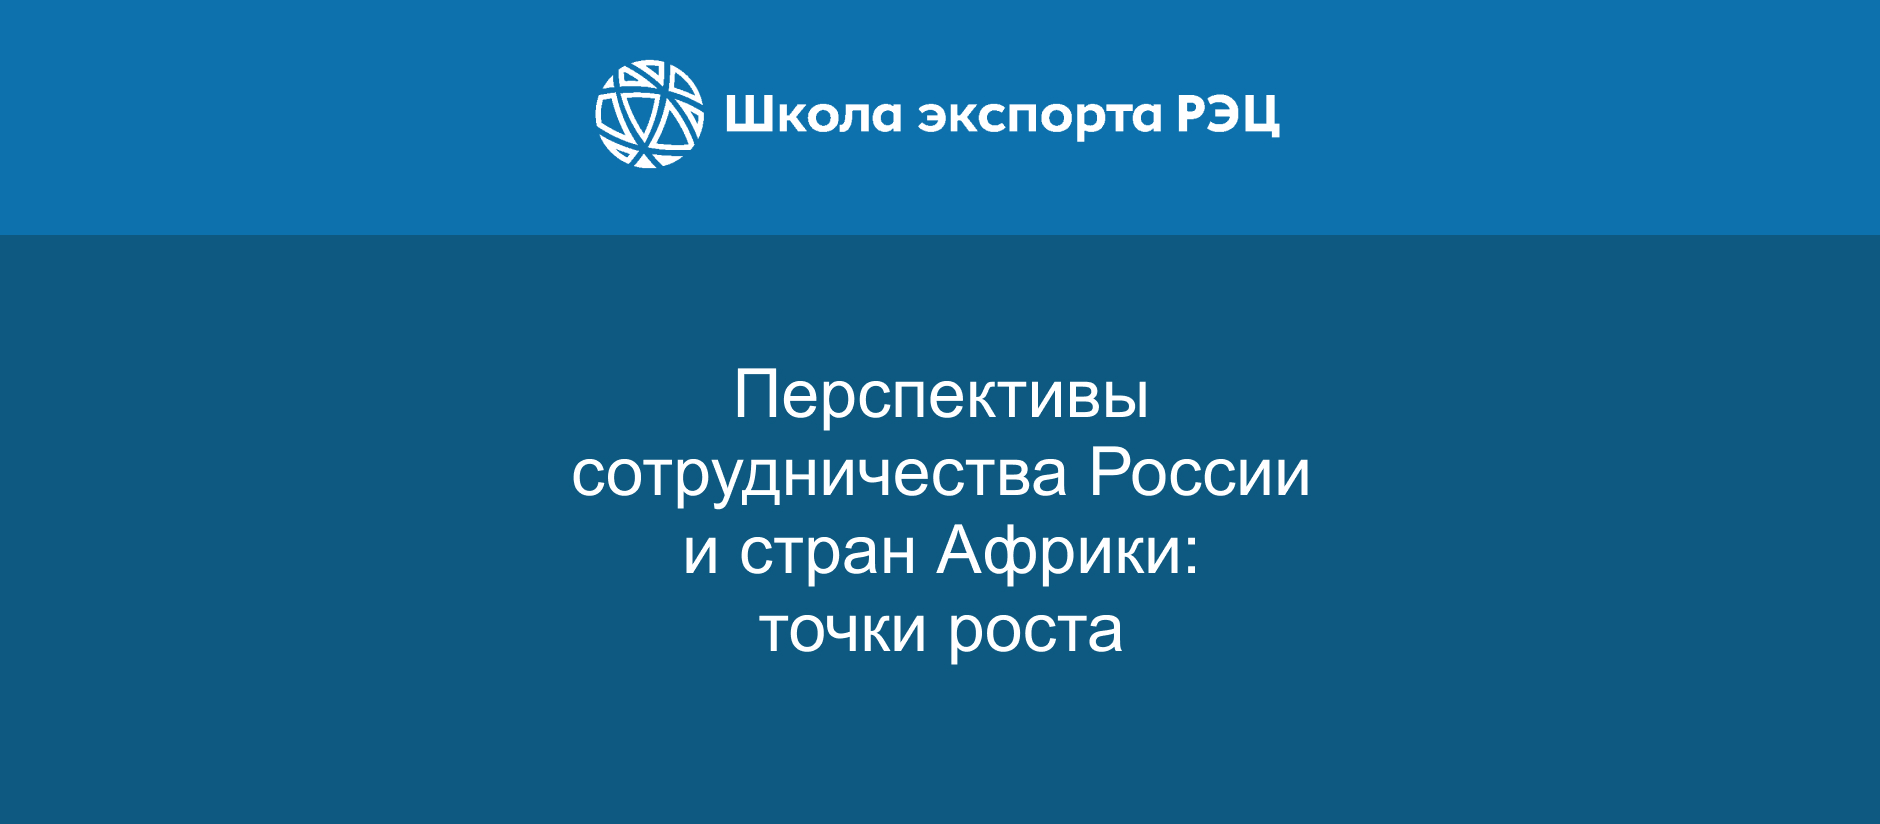 НИПТ принял участие в вебинаре «Перспективы сотрудничества России и стран Африки: точки роста»